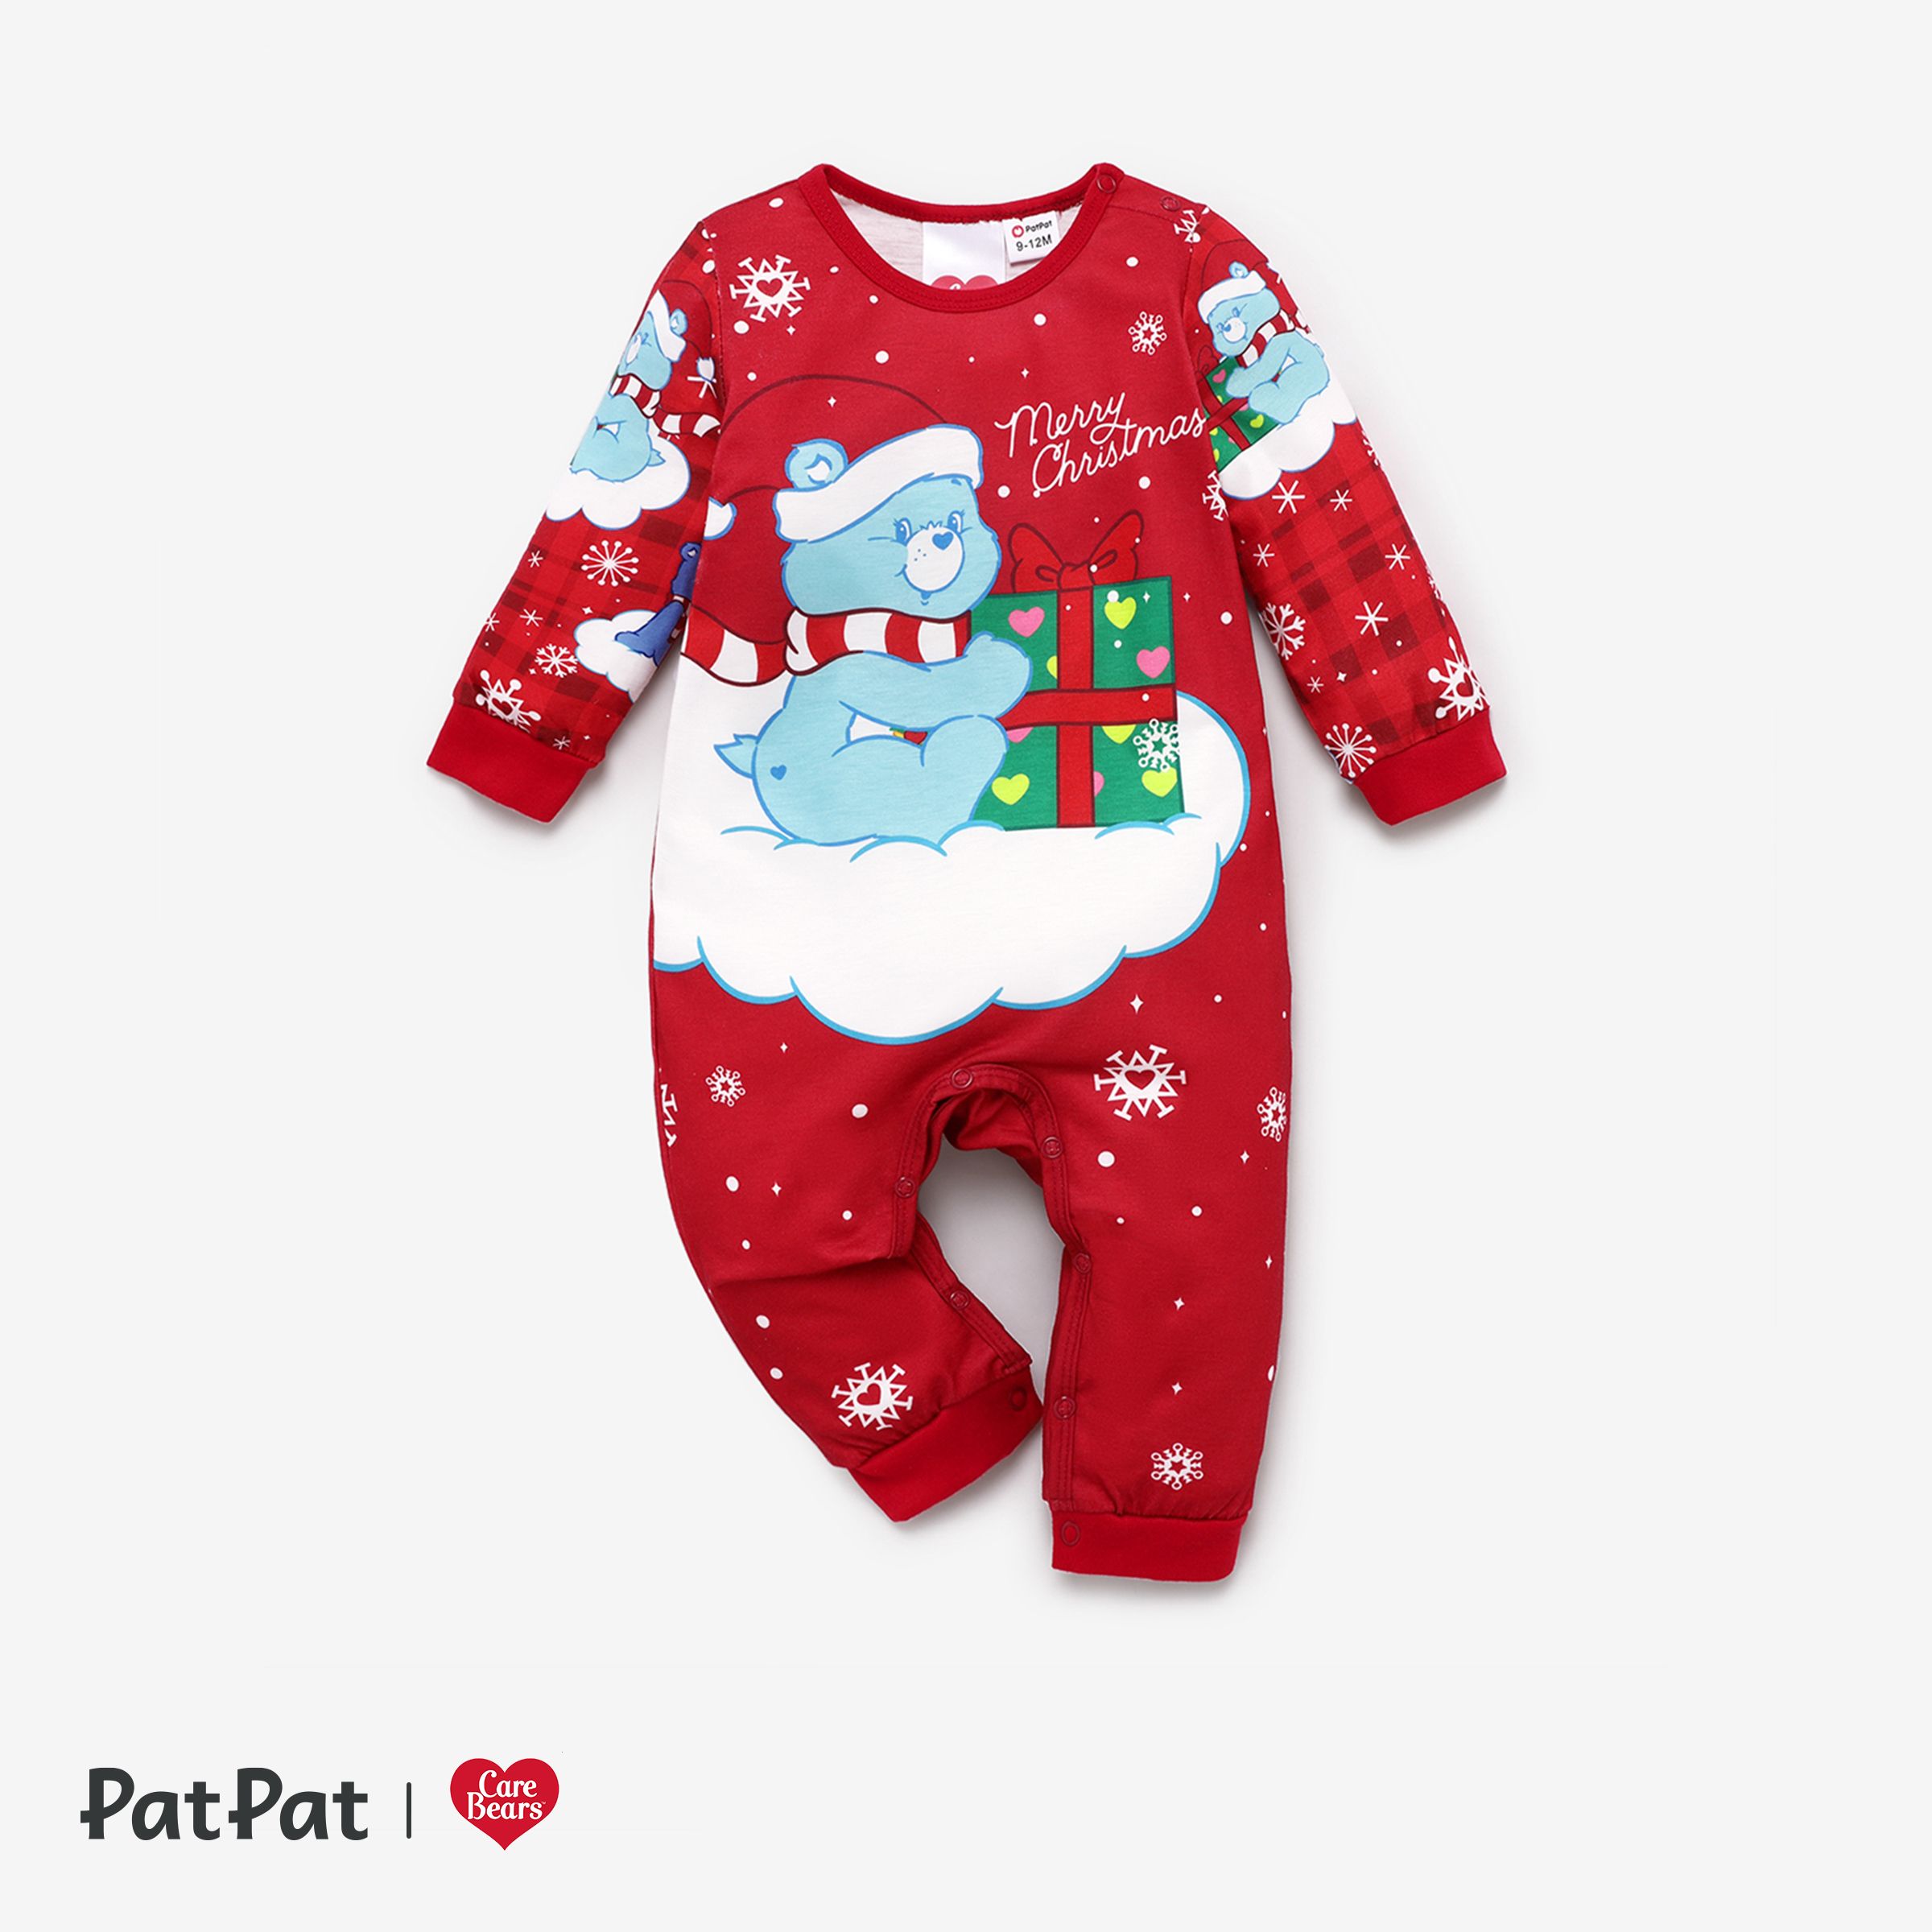 Care Bears Christmas Family Matching Snowflake Print Pajamas Sets (Flame Resistant)